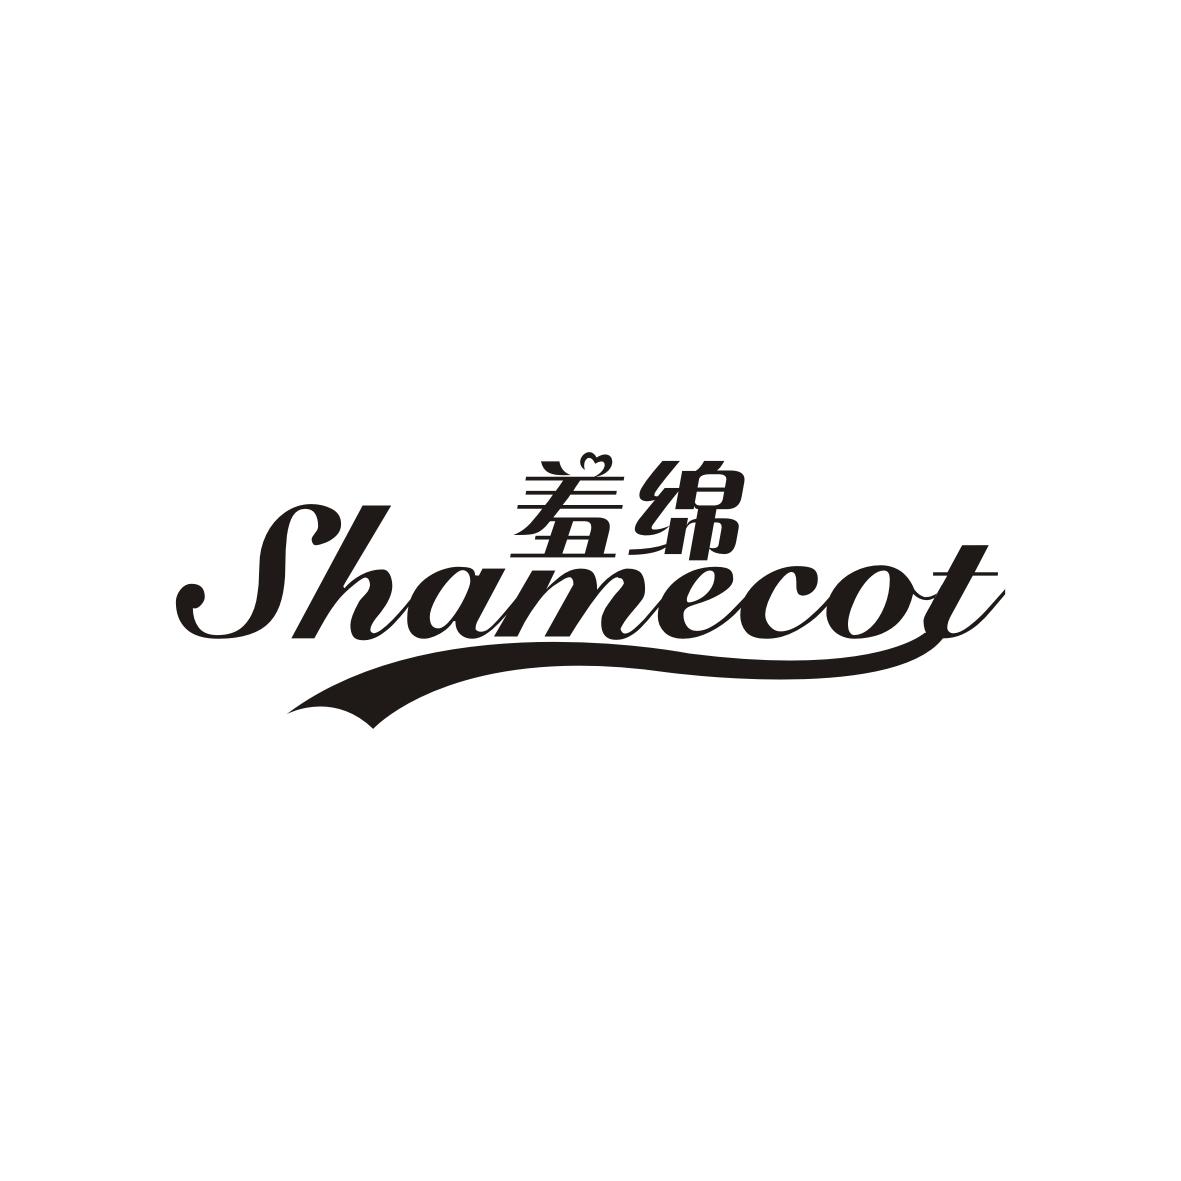  SHAMECOT